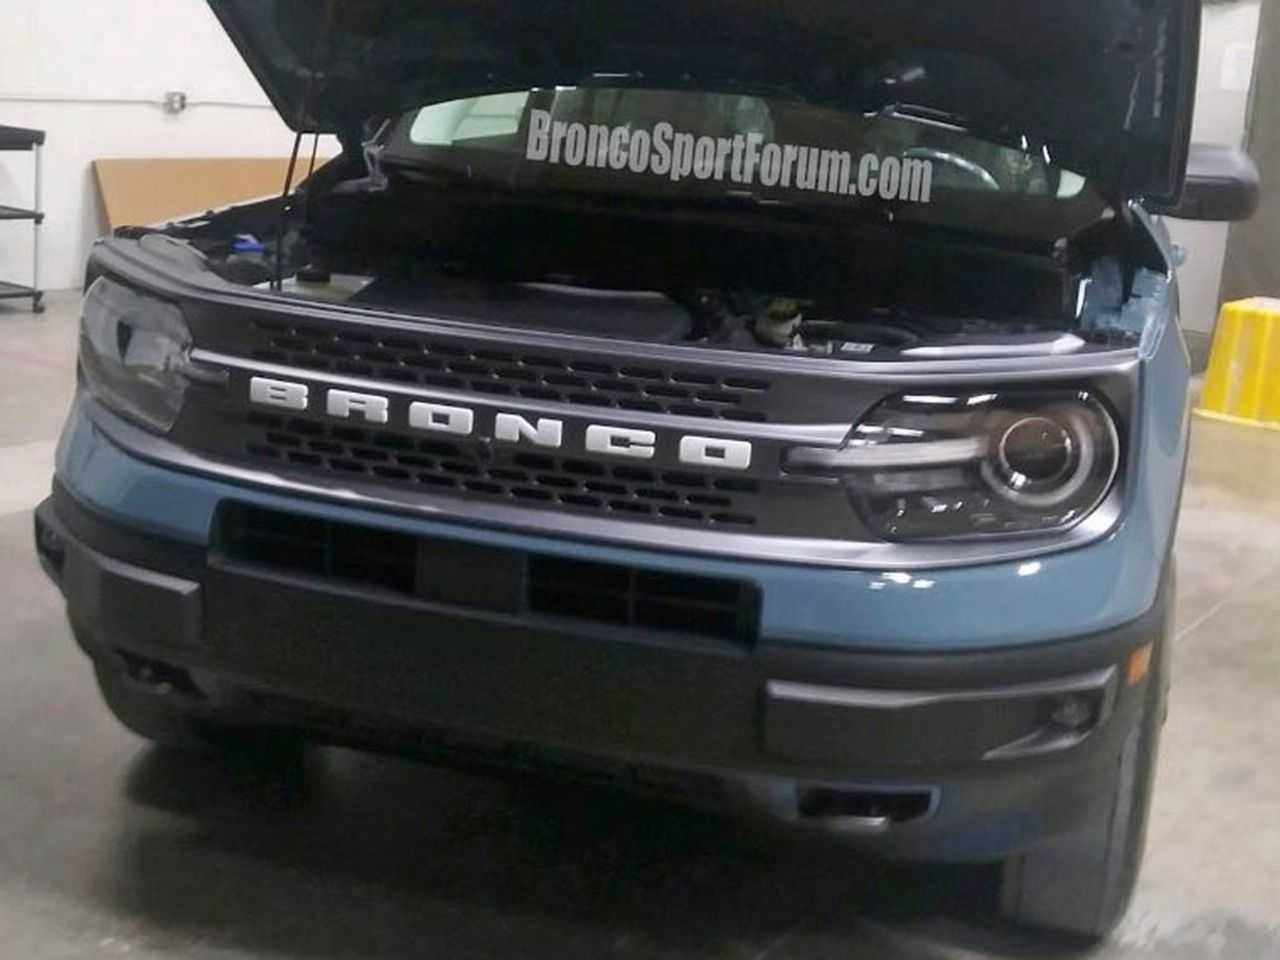 Imagens vazadas do novo Ford Bronco Sport